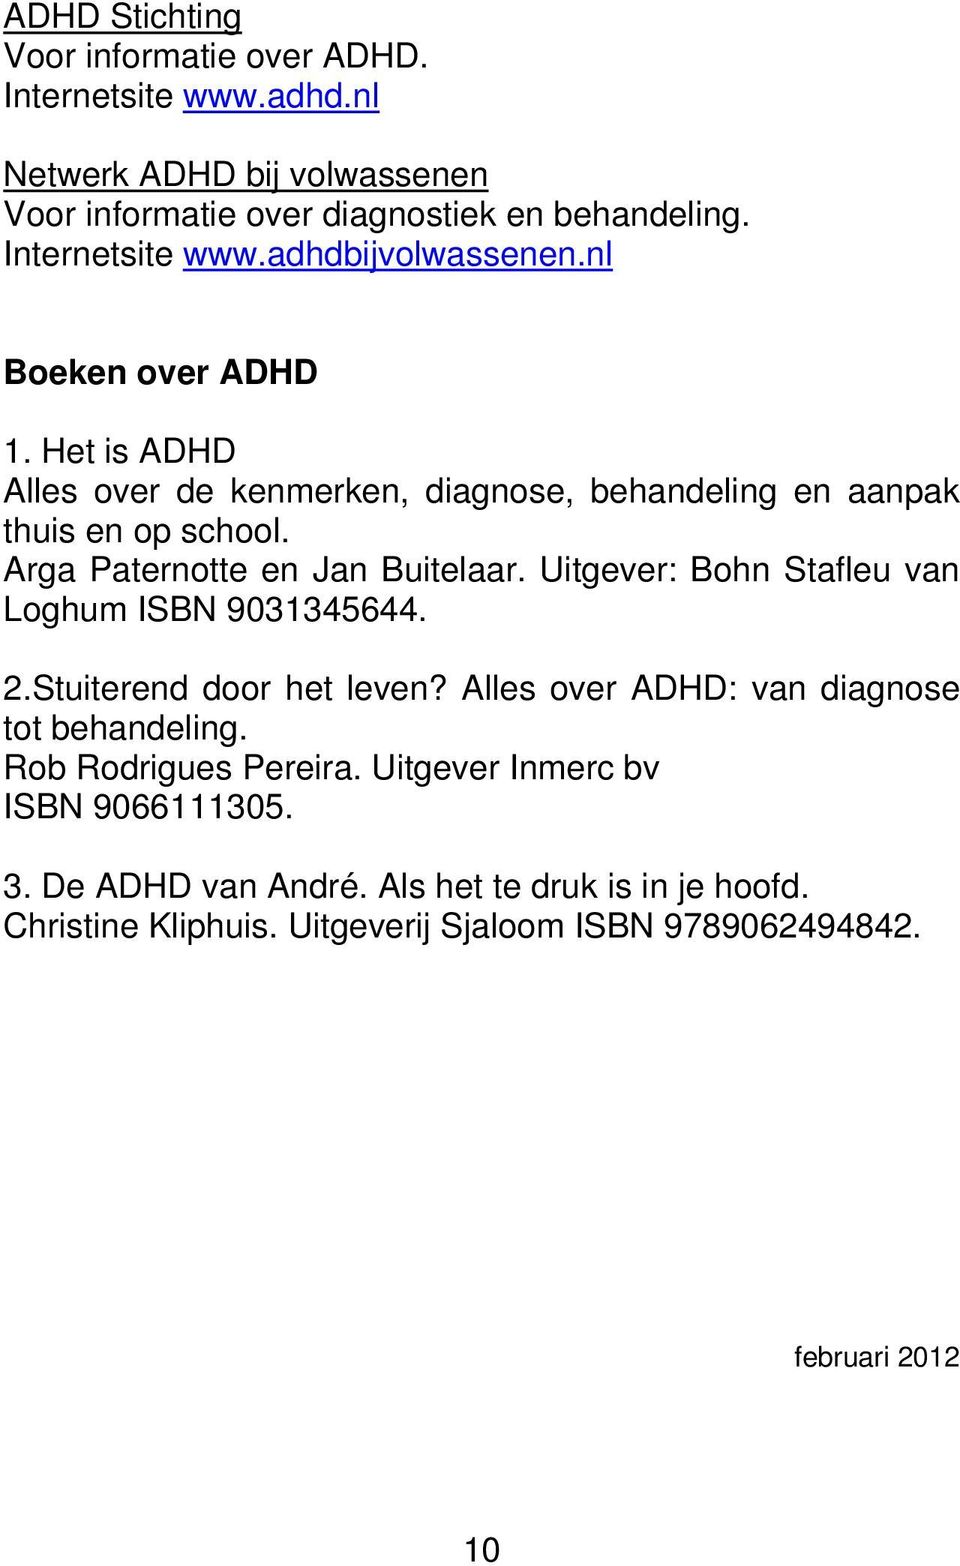 Arga Paternotte en Jan Buitelaar. Uitgever: Bohn Stafleu van Loghum ISBN 9031345644. 2.Stuiterend door het leven? Alles over ADHD: van diagnose tot behandeling.